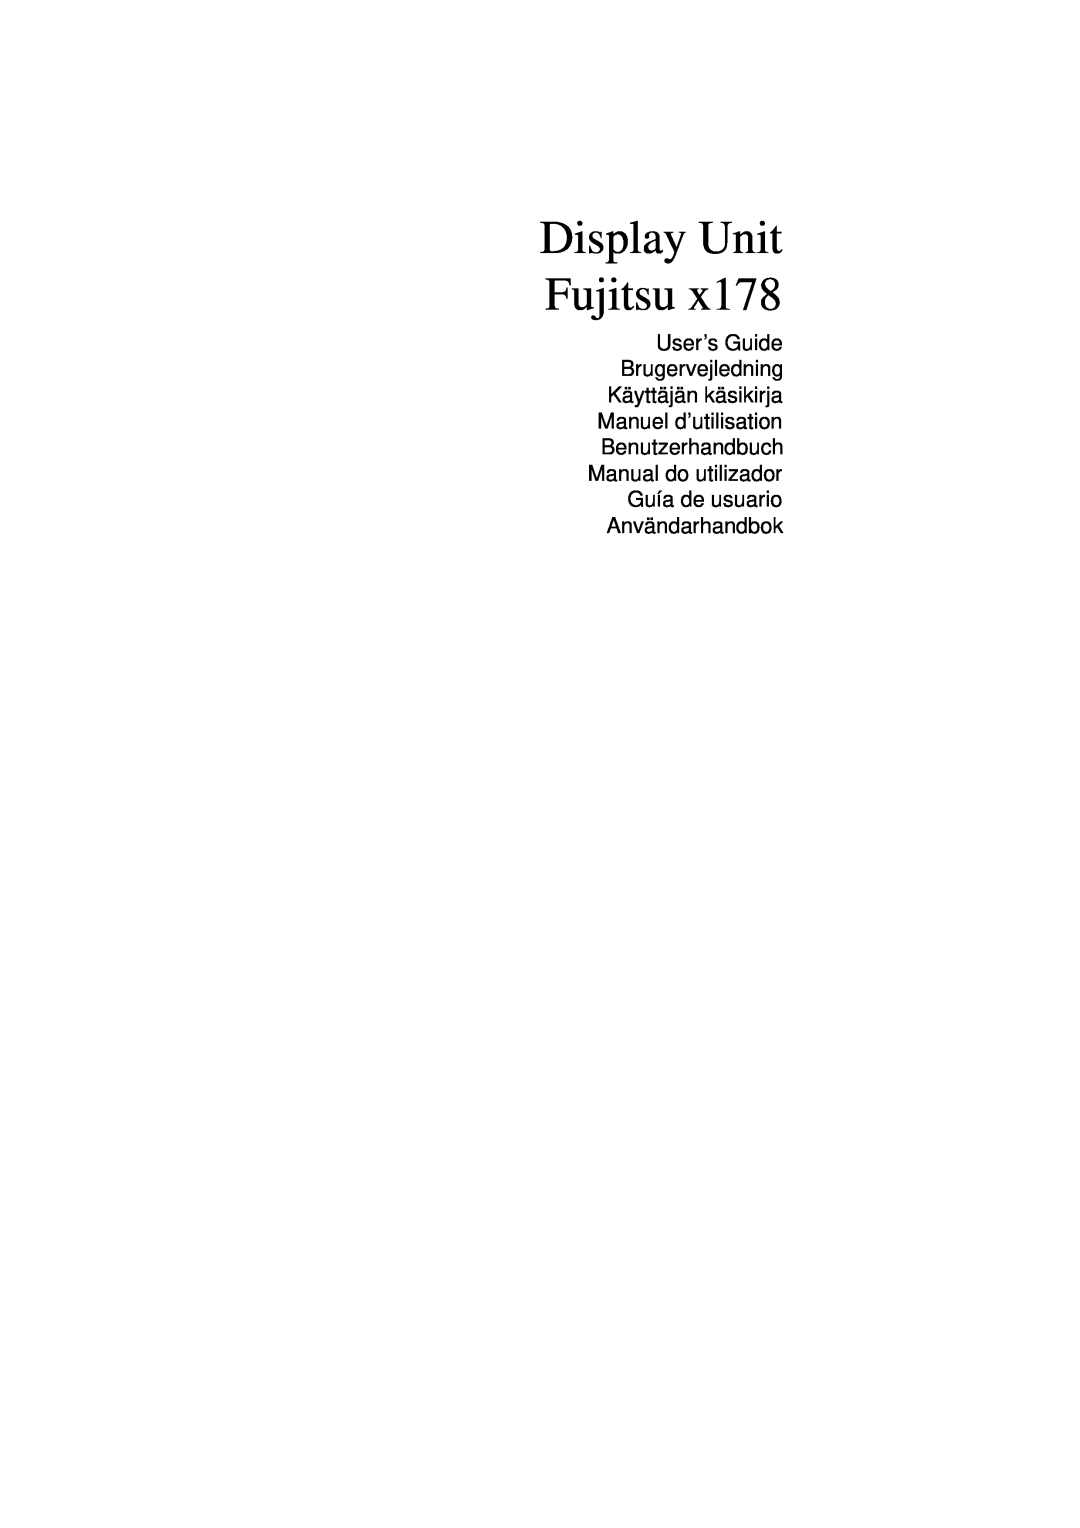 Fujitsu x178 manuel dutilisation Display Unit Fujitsu 